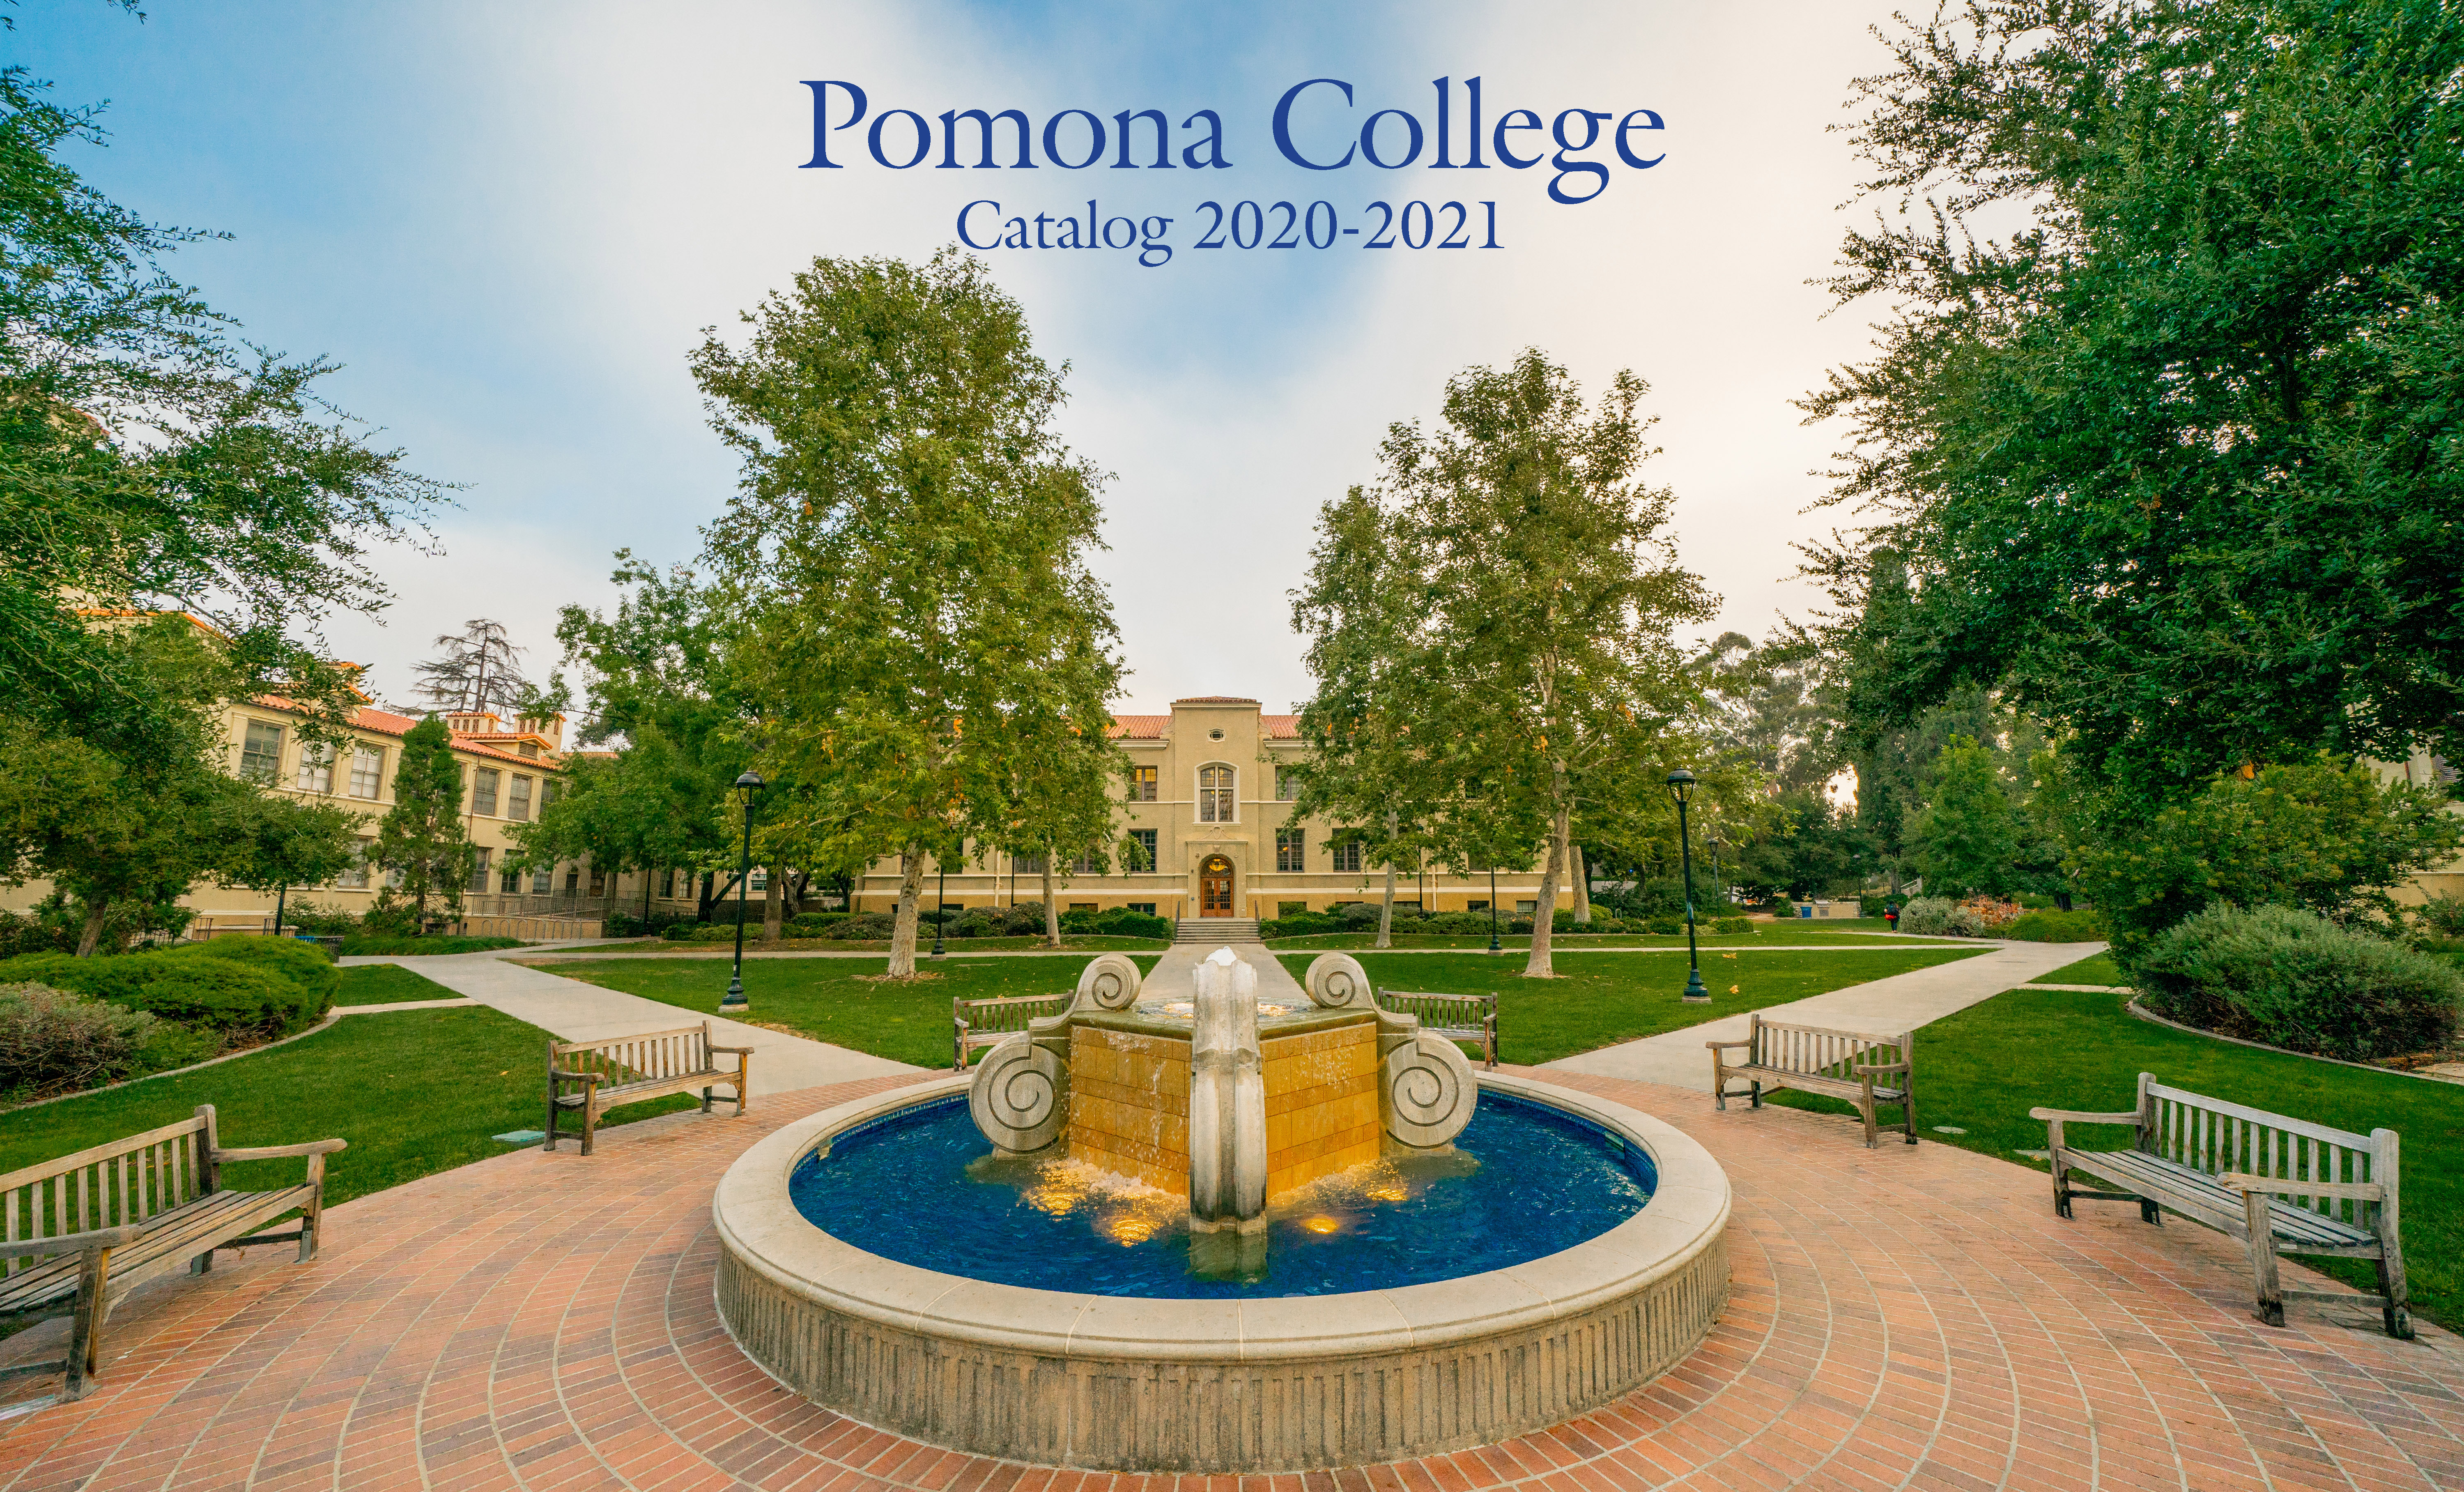 Pomona College Catalog 2020-2021